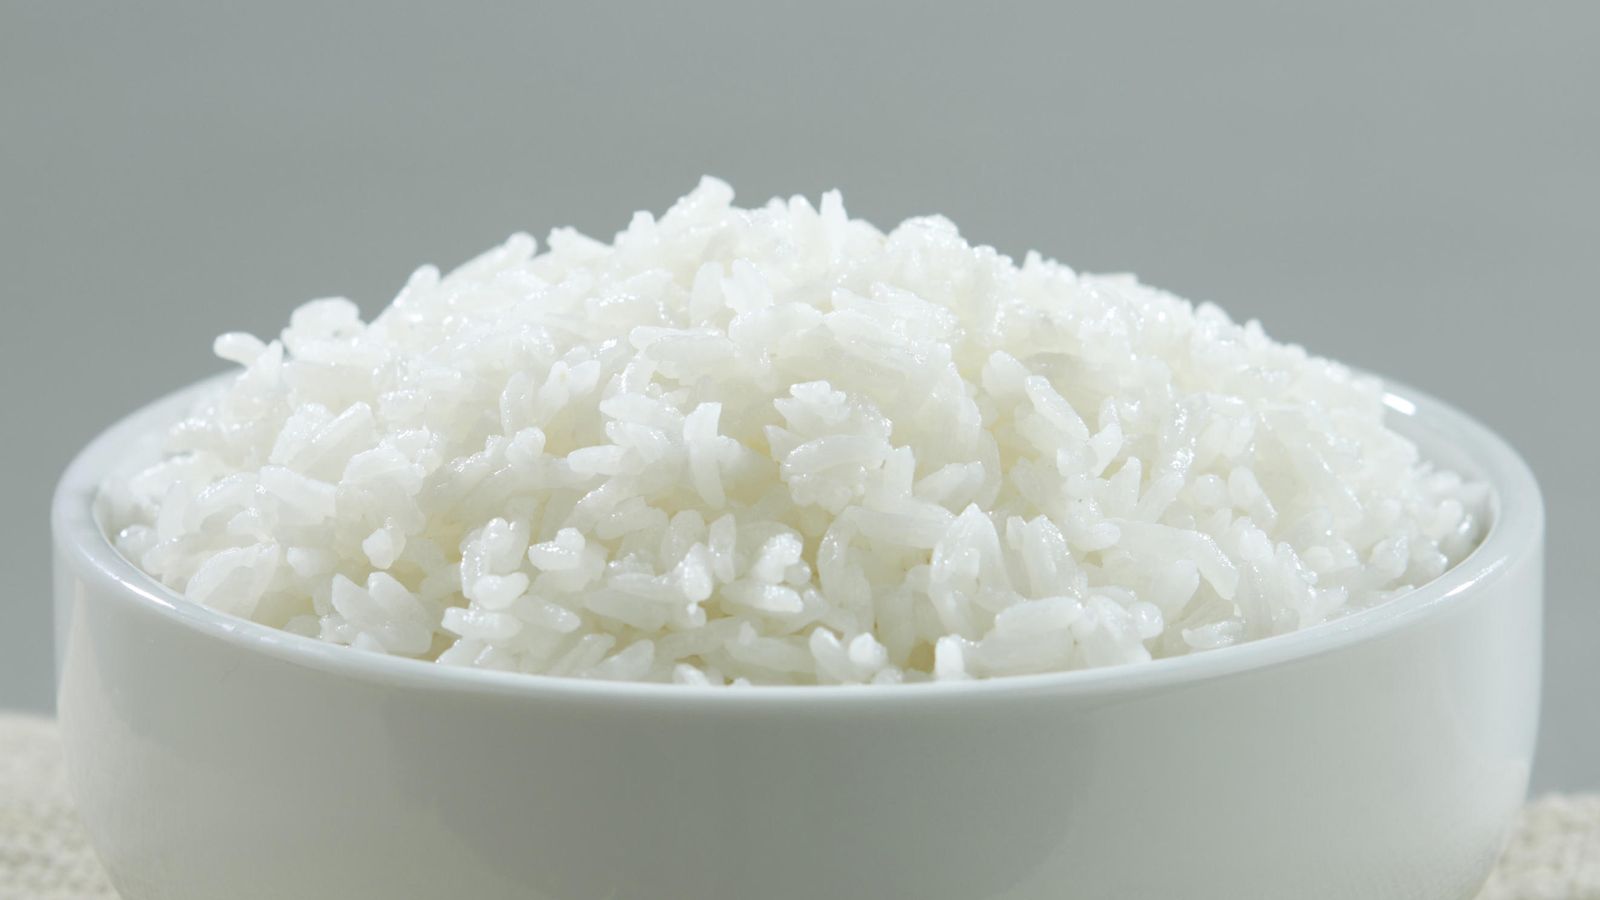 Atento mecanismo fuego La forma de cocinar el arroz para que engorde muchísimo menos